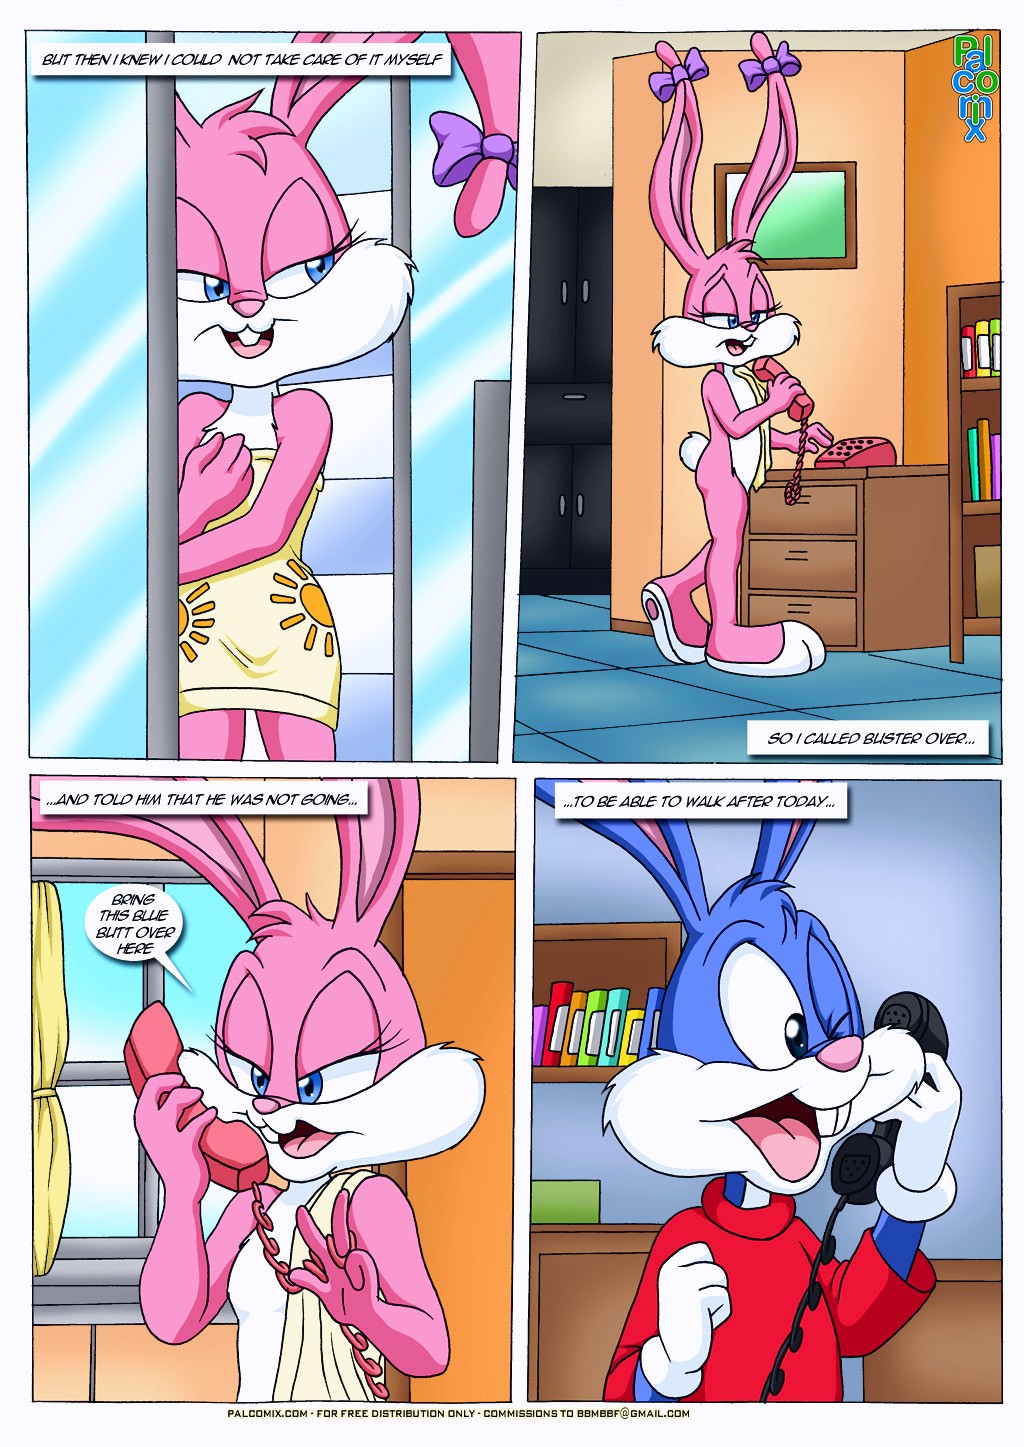 Babs Bunny Porn - Babs in Heat porn comic - the best cartoon porn comics, Rule 34 | MULT34